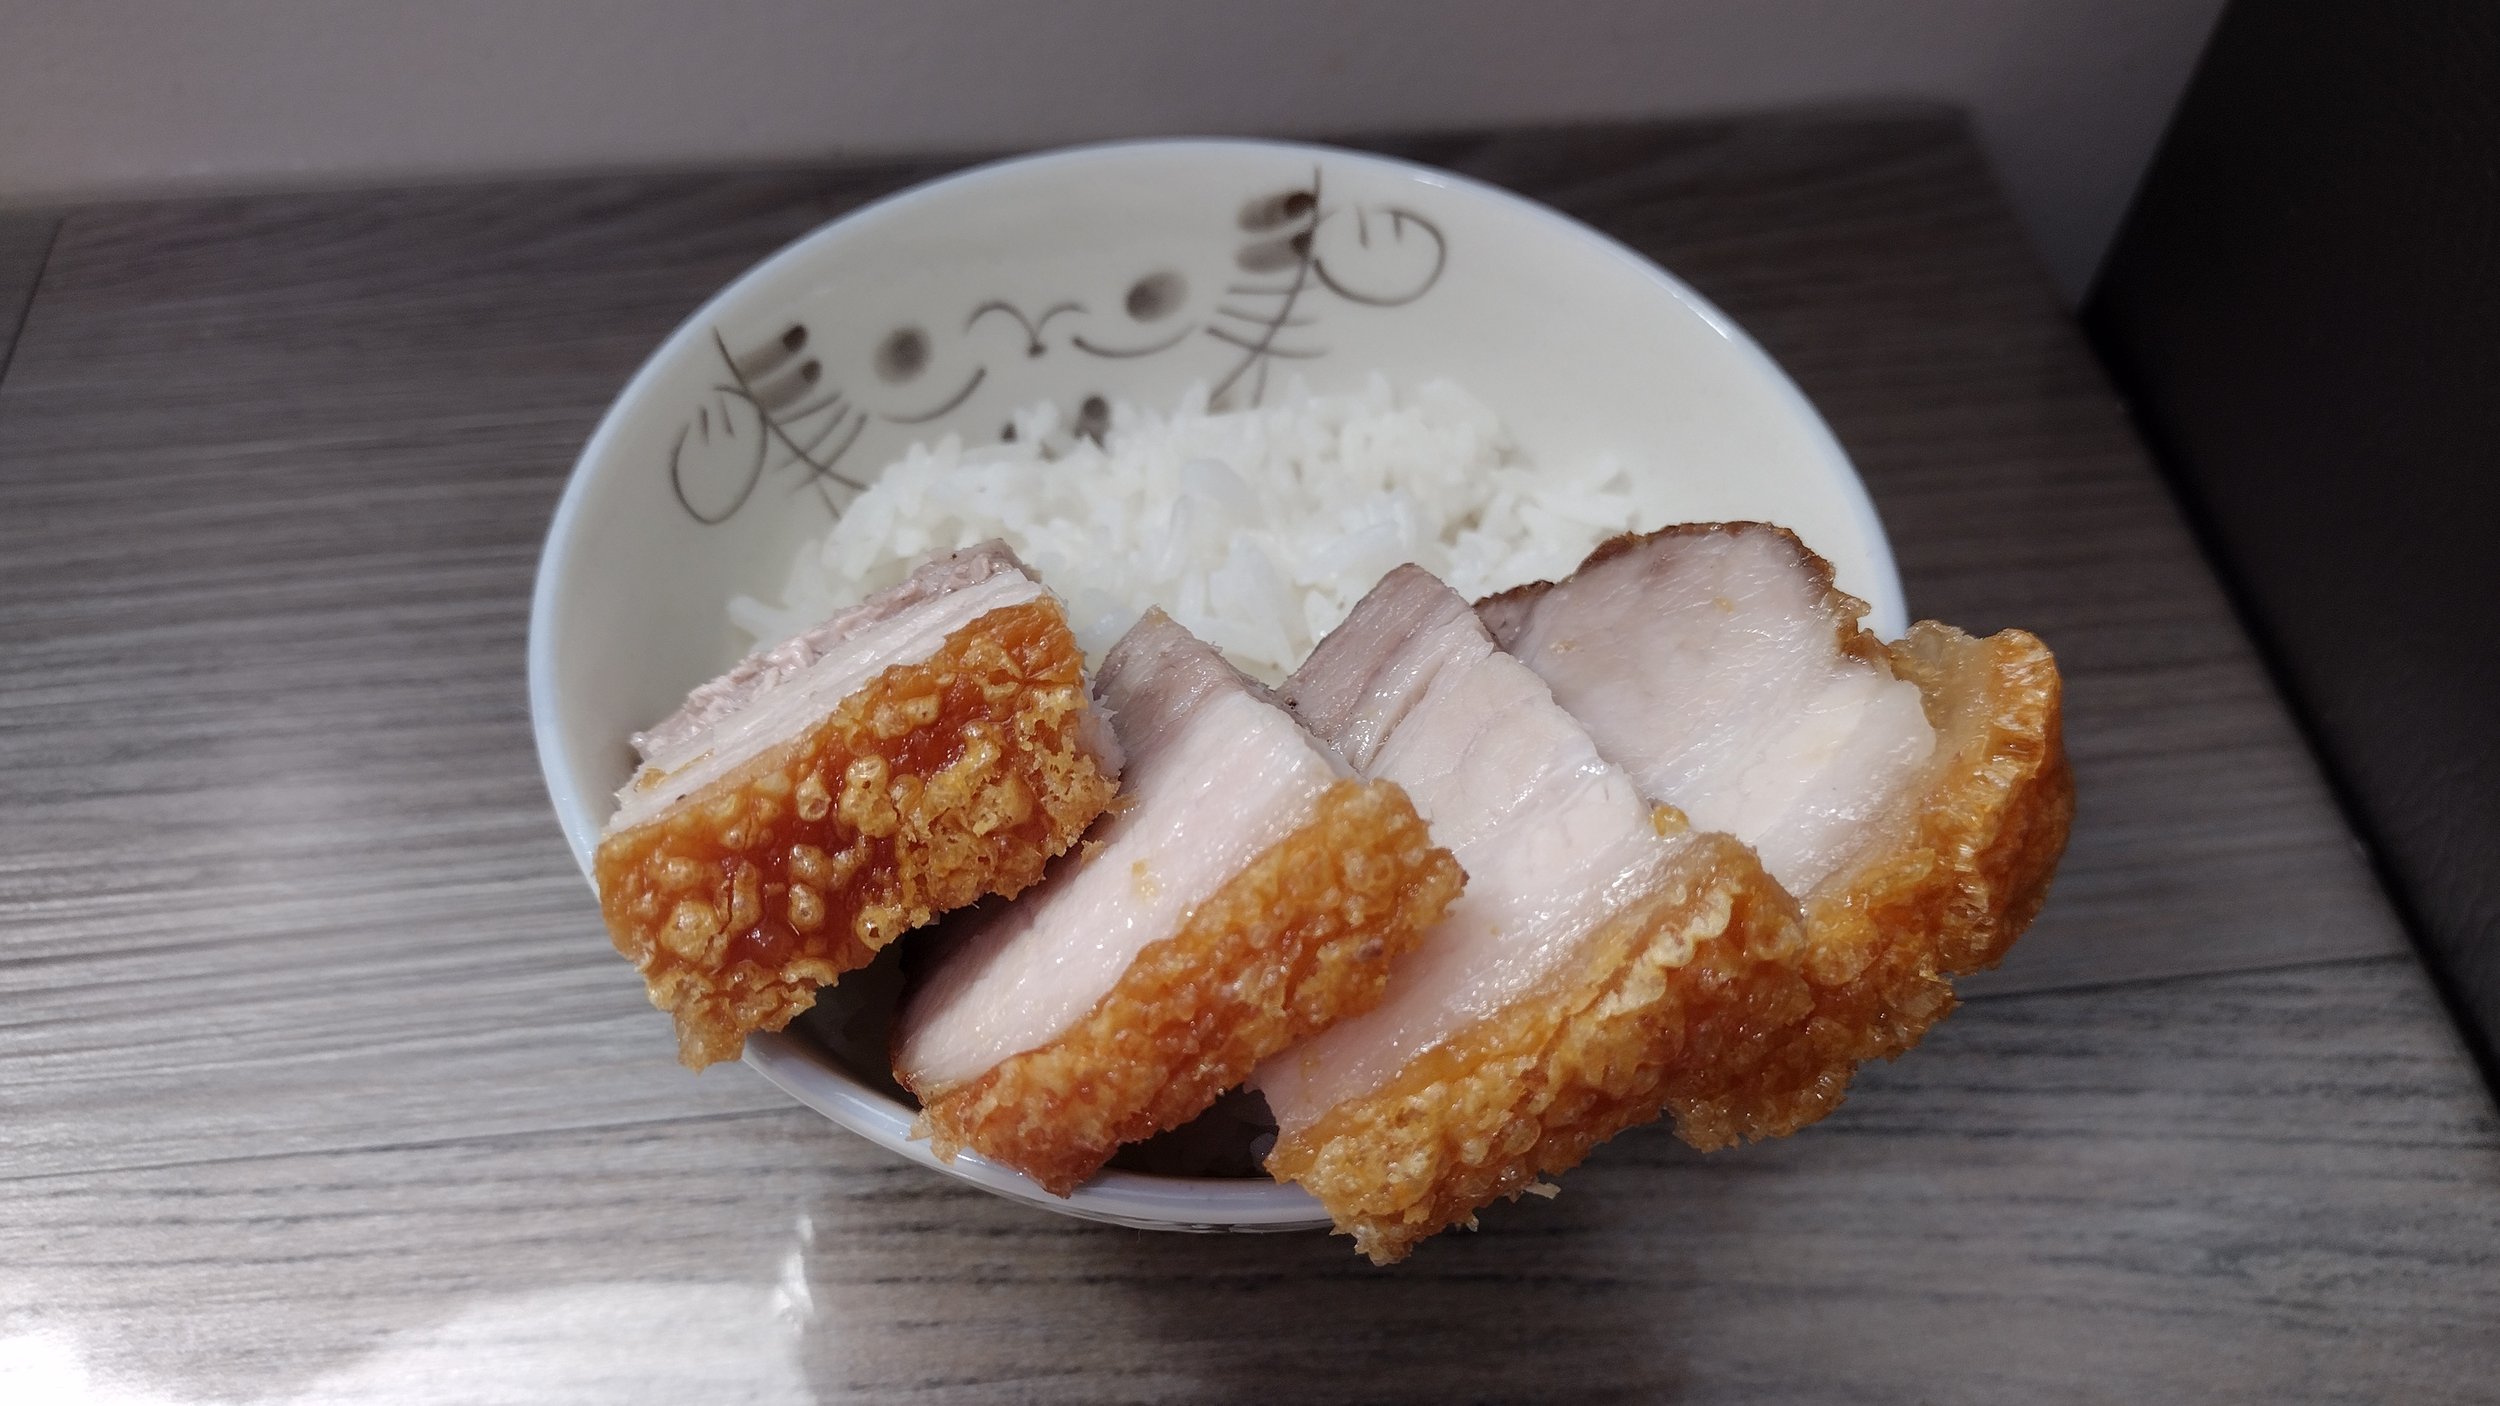 Restaurant Style Chinese Pork Belly - Siu Yuk (燒肉)